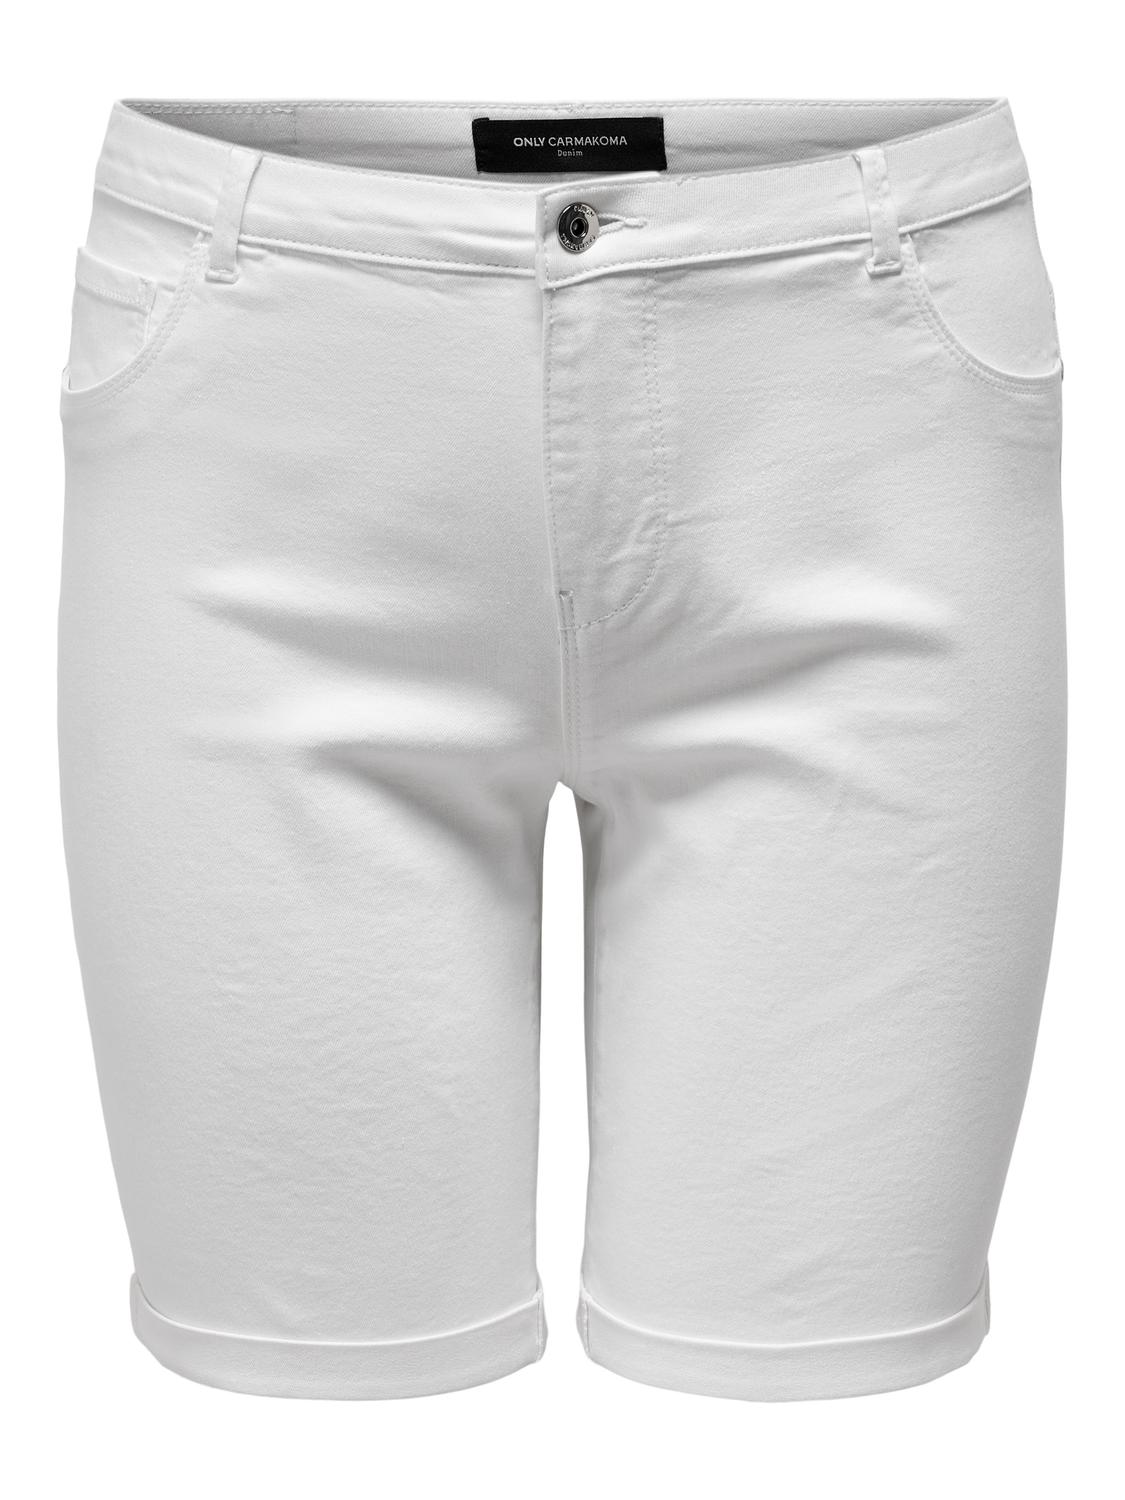 ONLY Skinny Fit Säume zum Umschlagen Shorts -White - 15281047